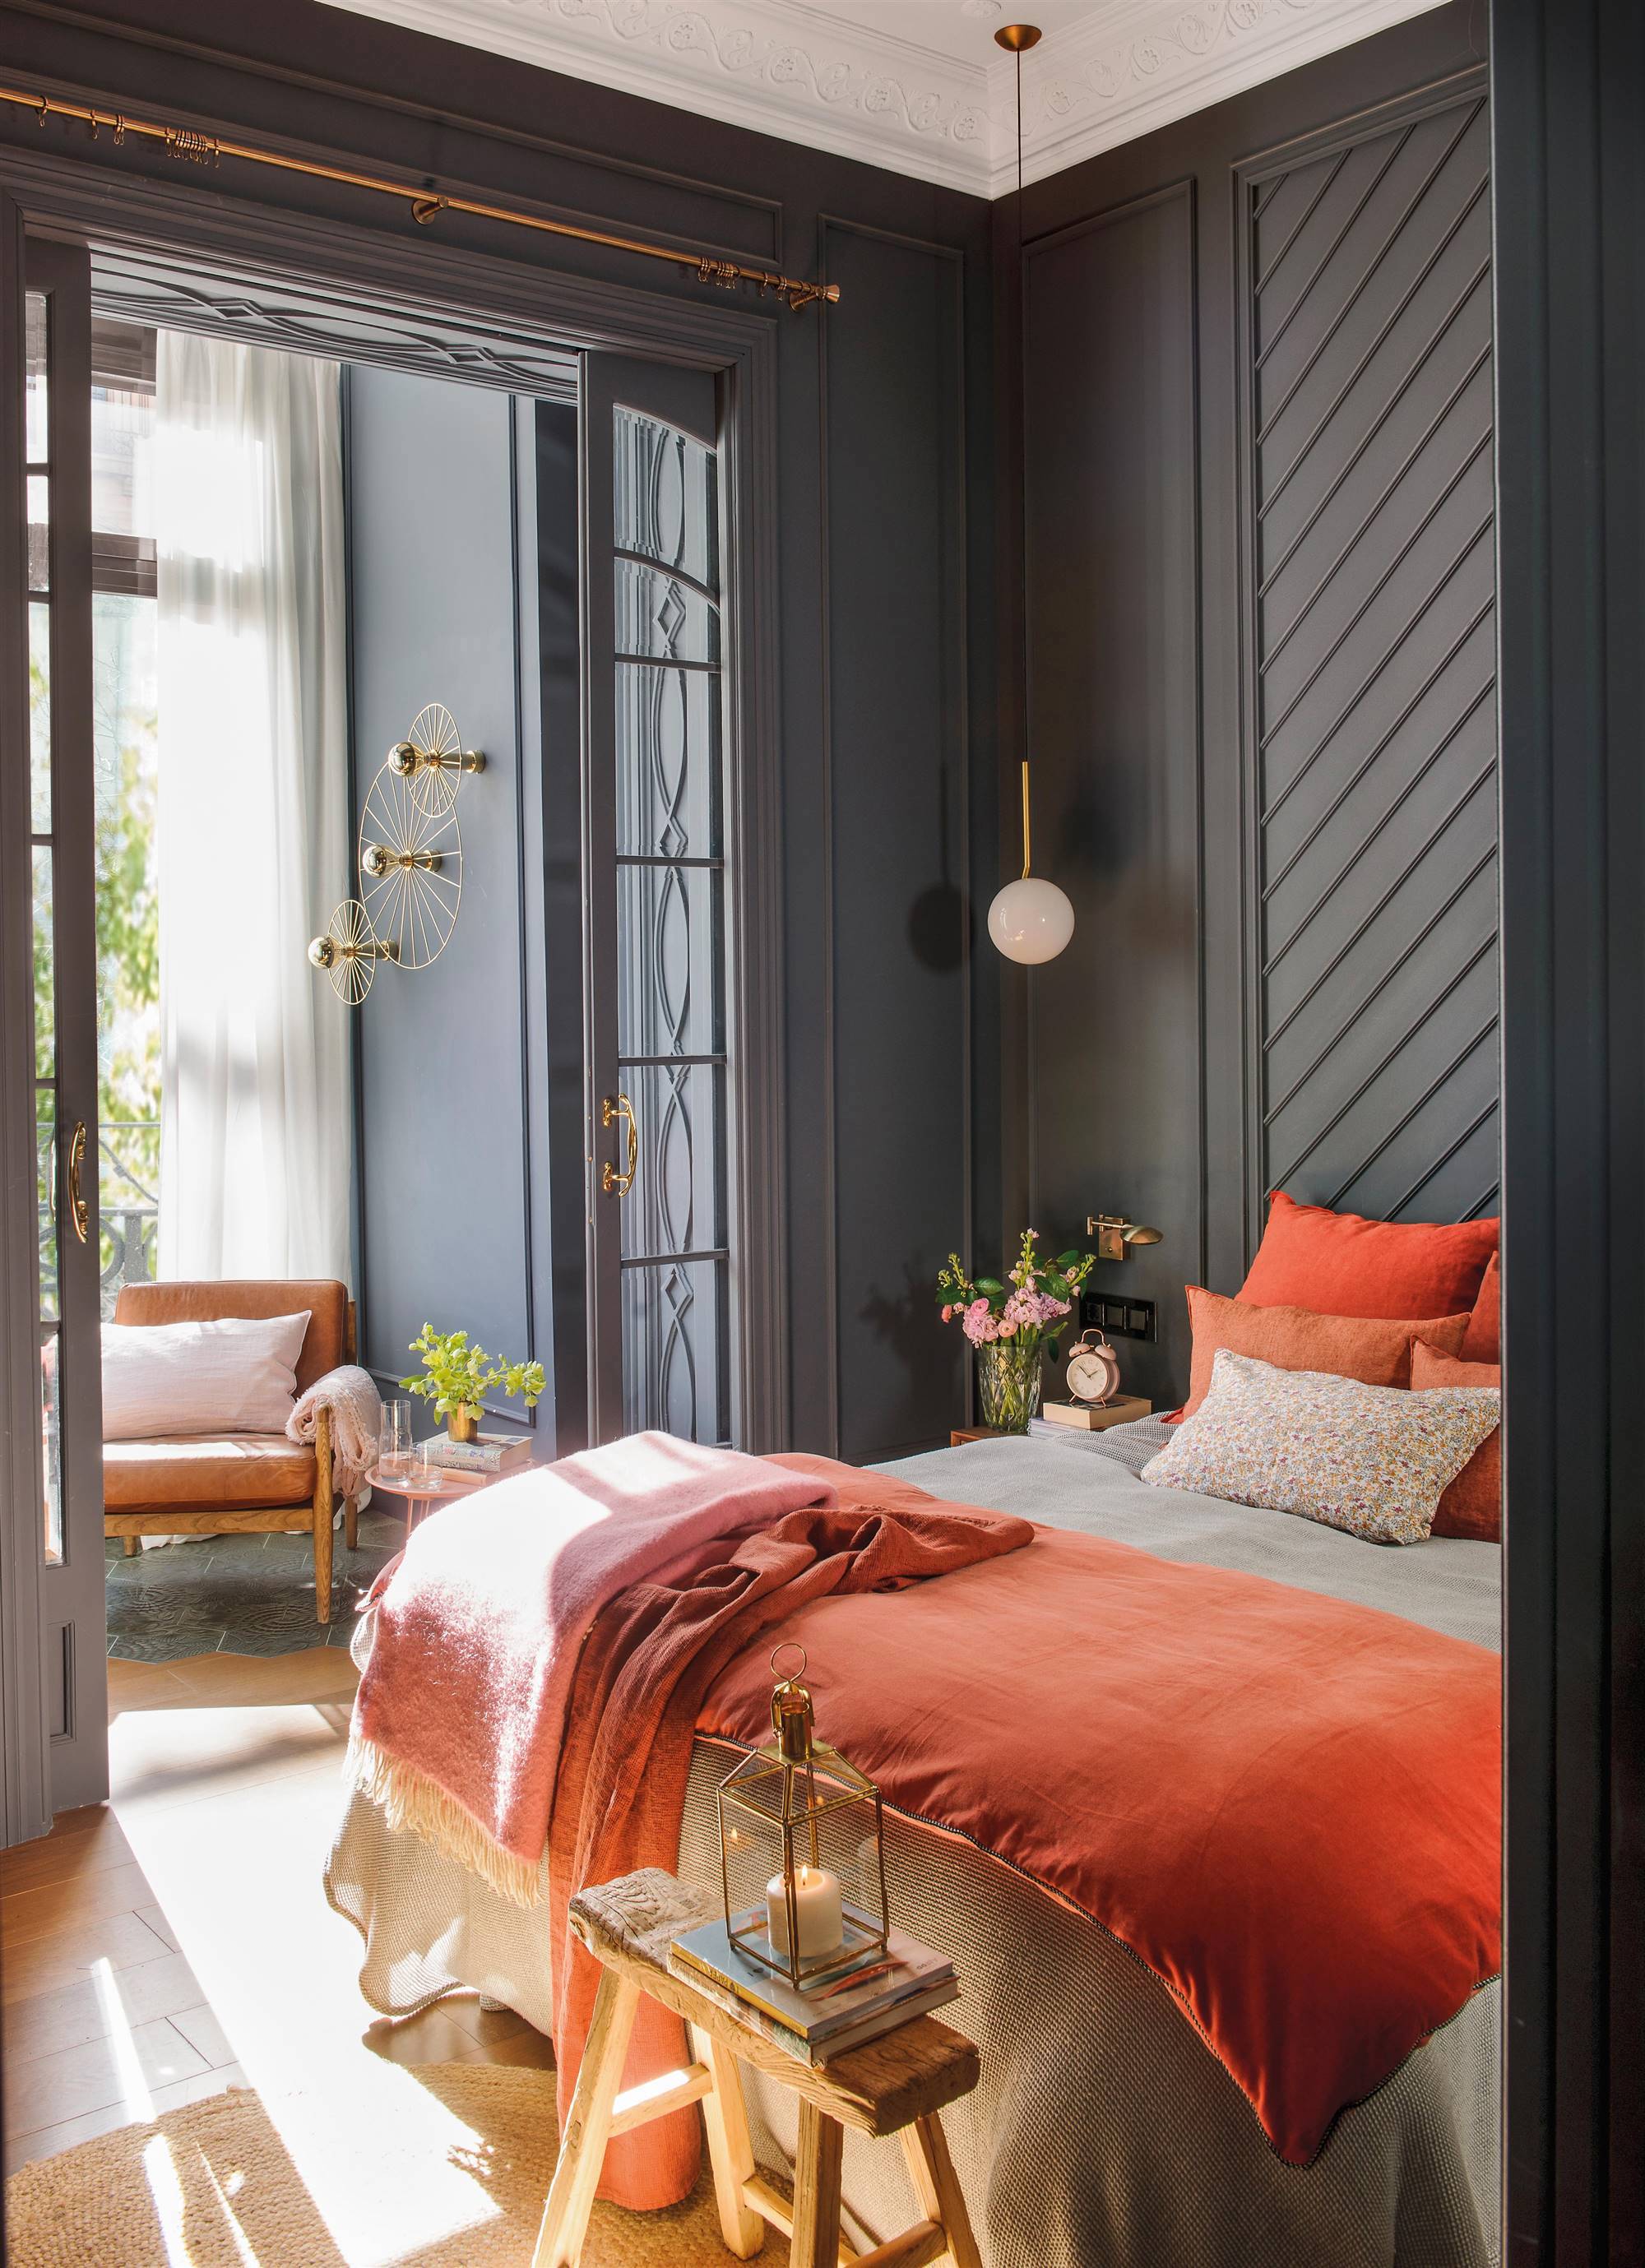 Dormitorio con paredes grises con molduras y apliques dorados.